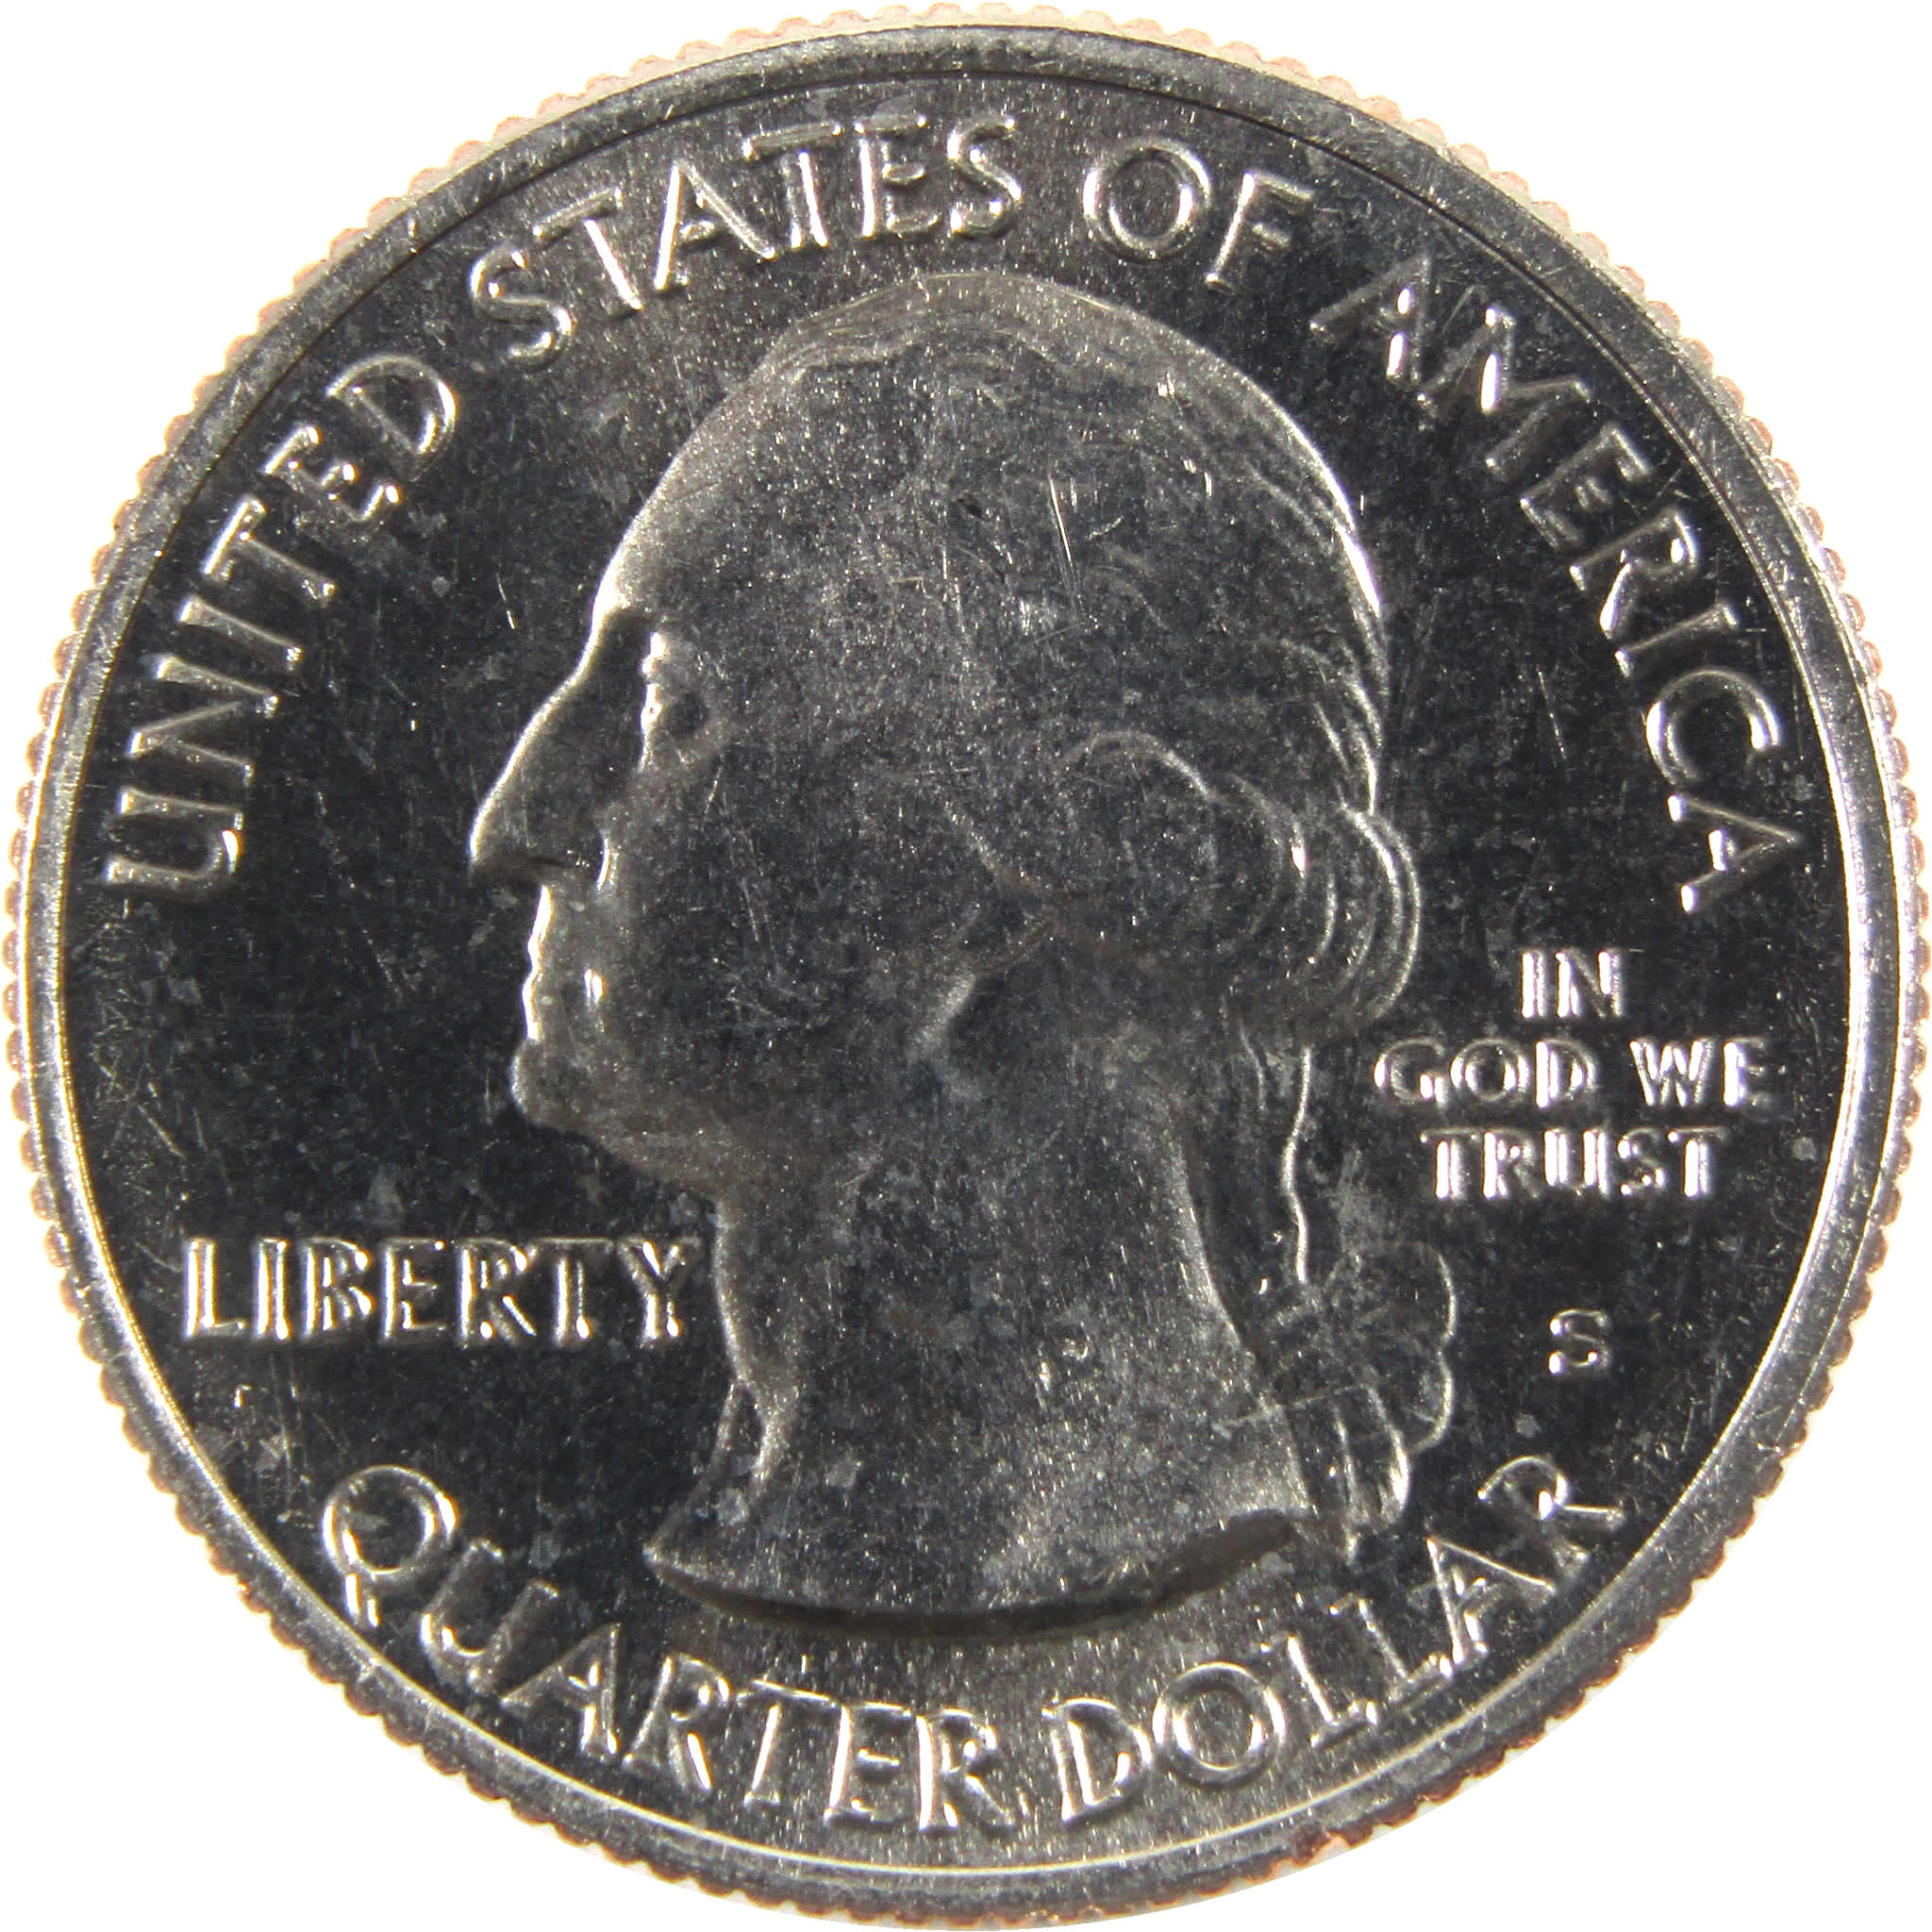 2020 S Marsh-Billings-Rockefeller National Park Quarter BU Clad Coin